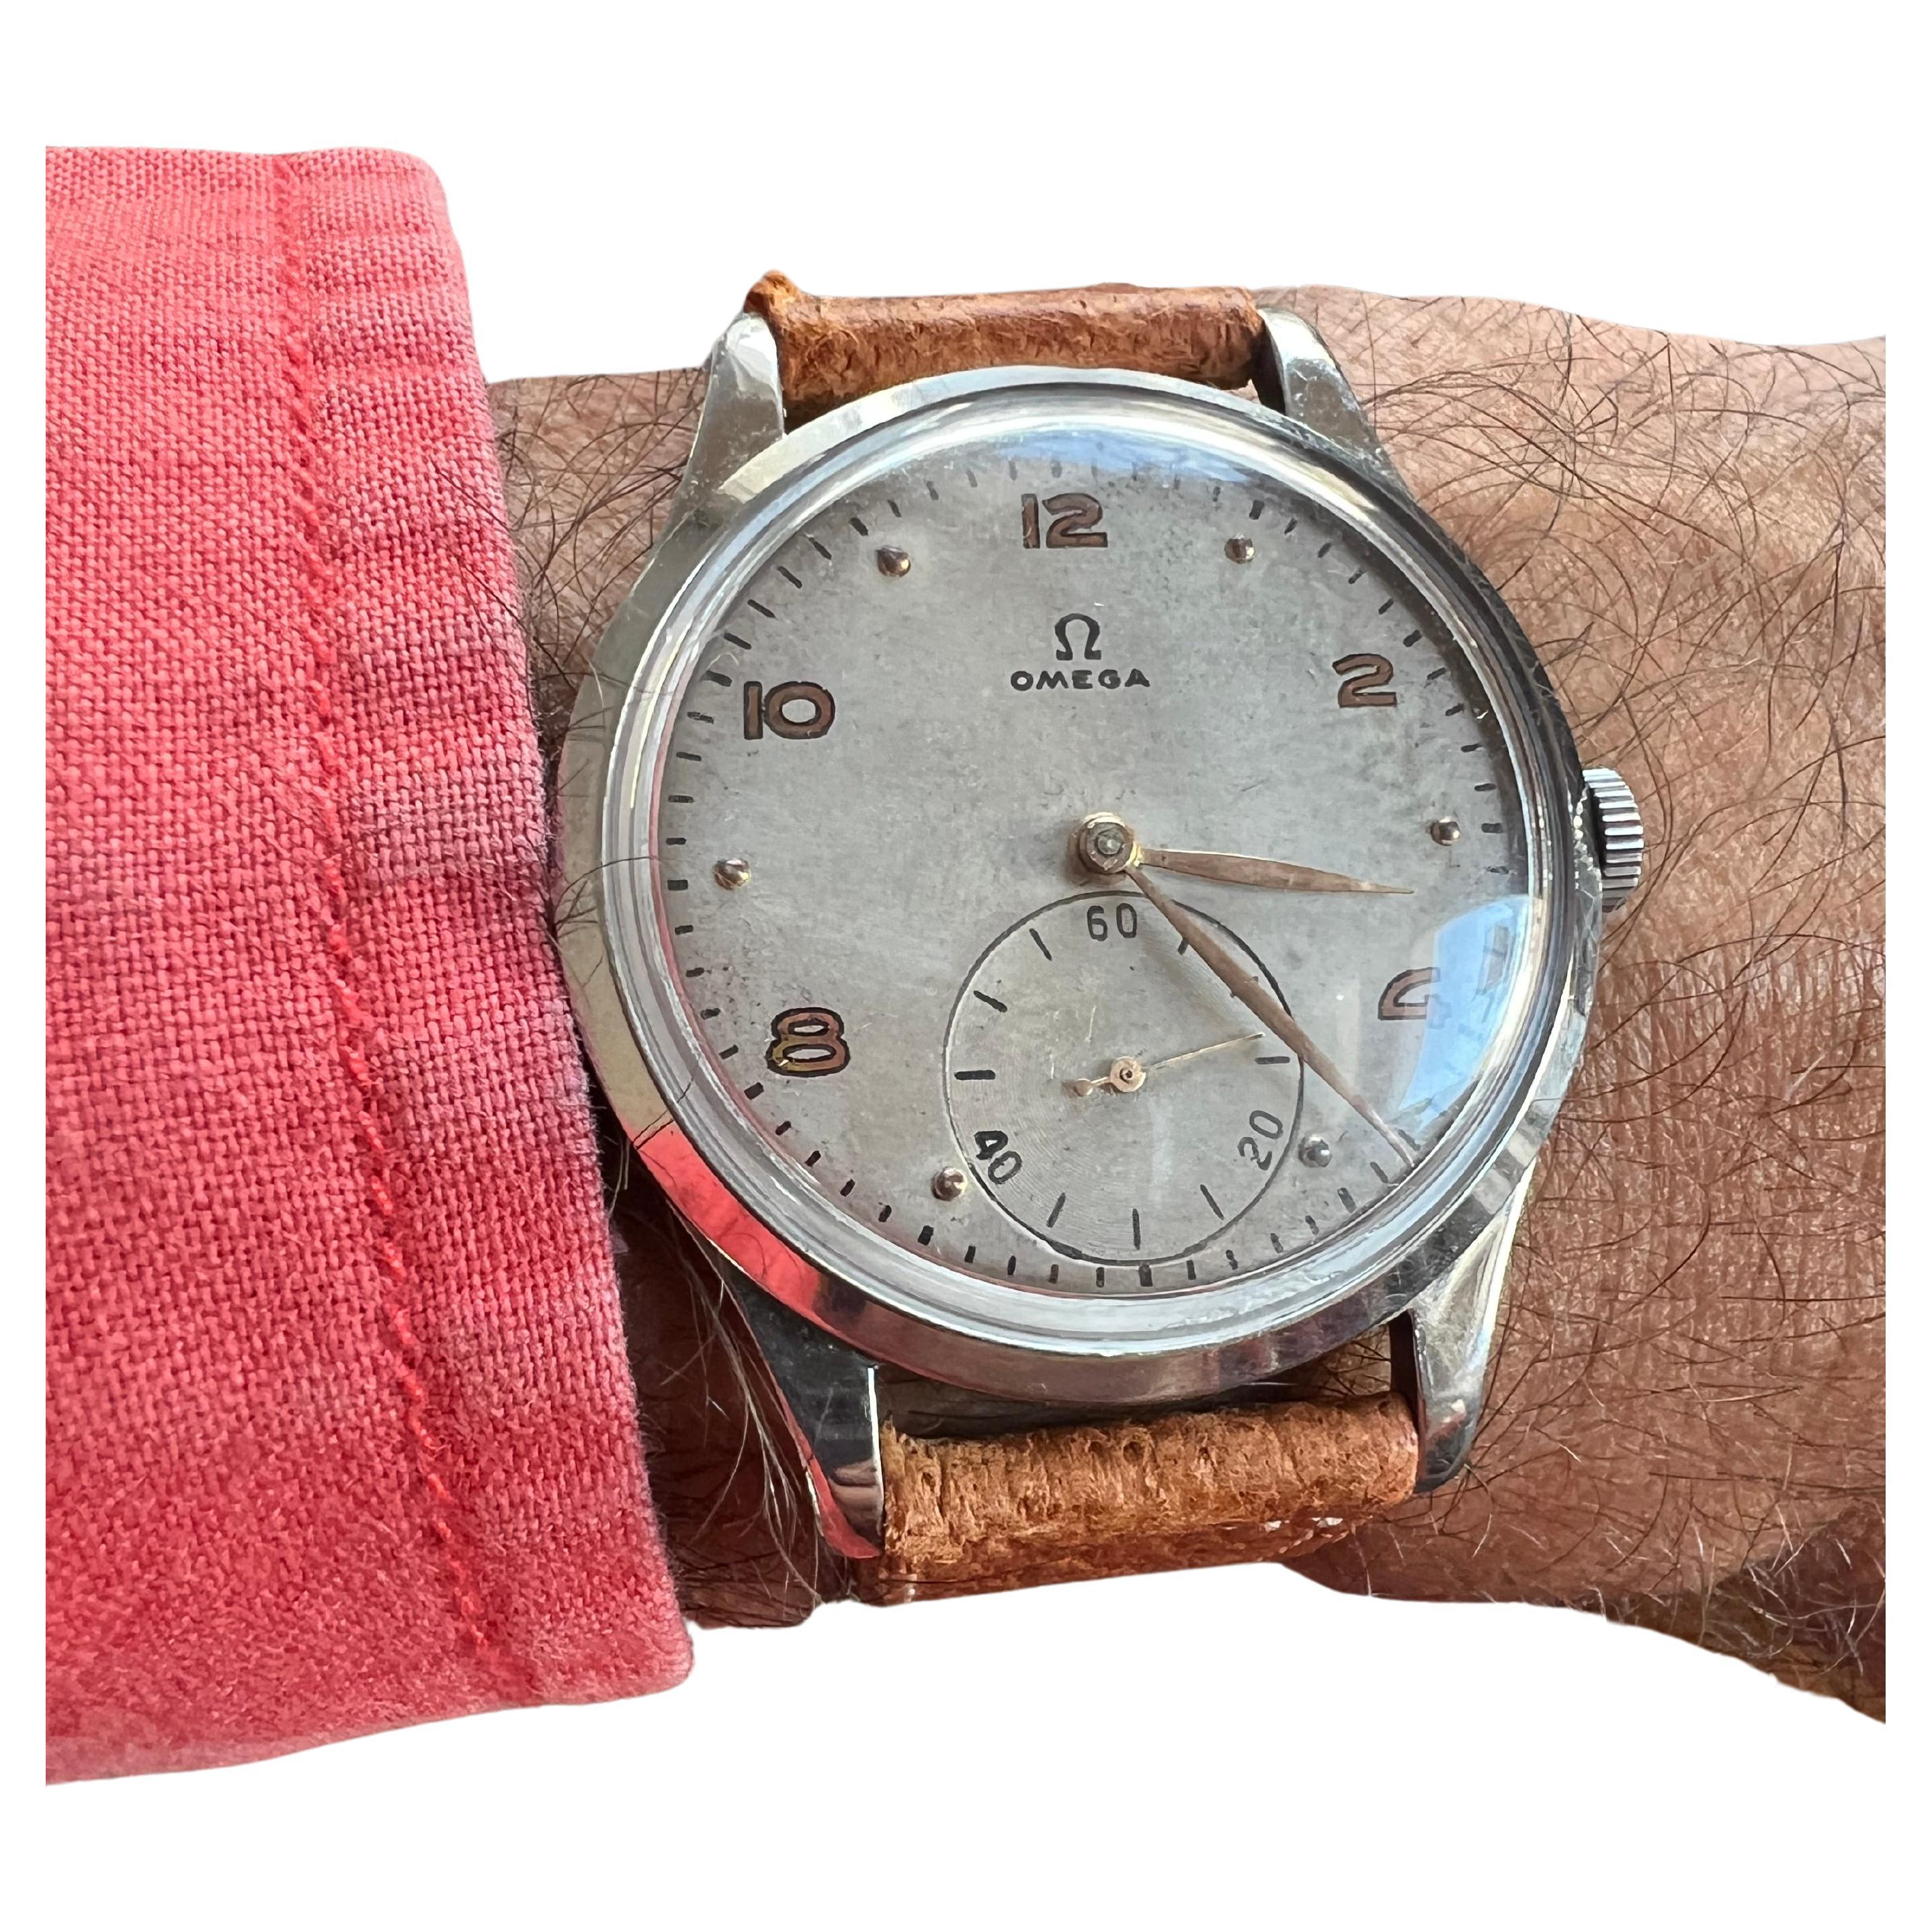 Montre-bracelet Omega surdimensionnée vers 1947